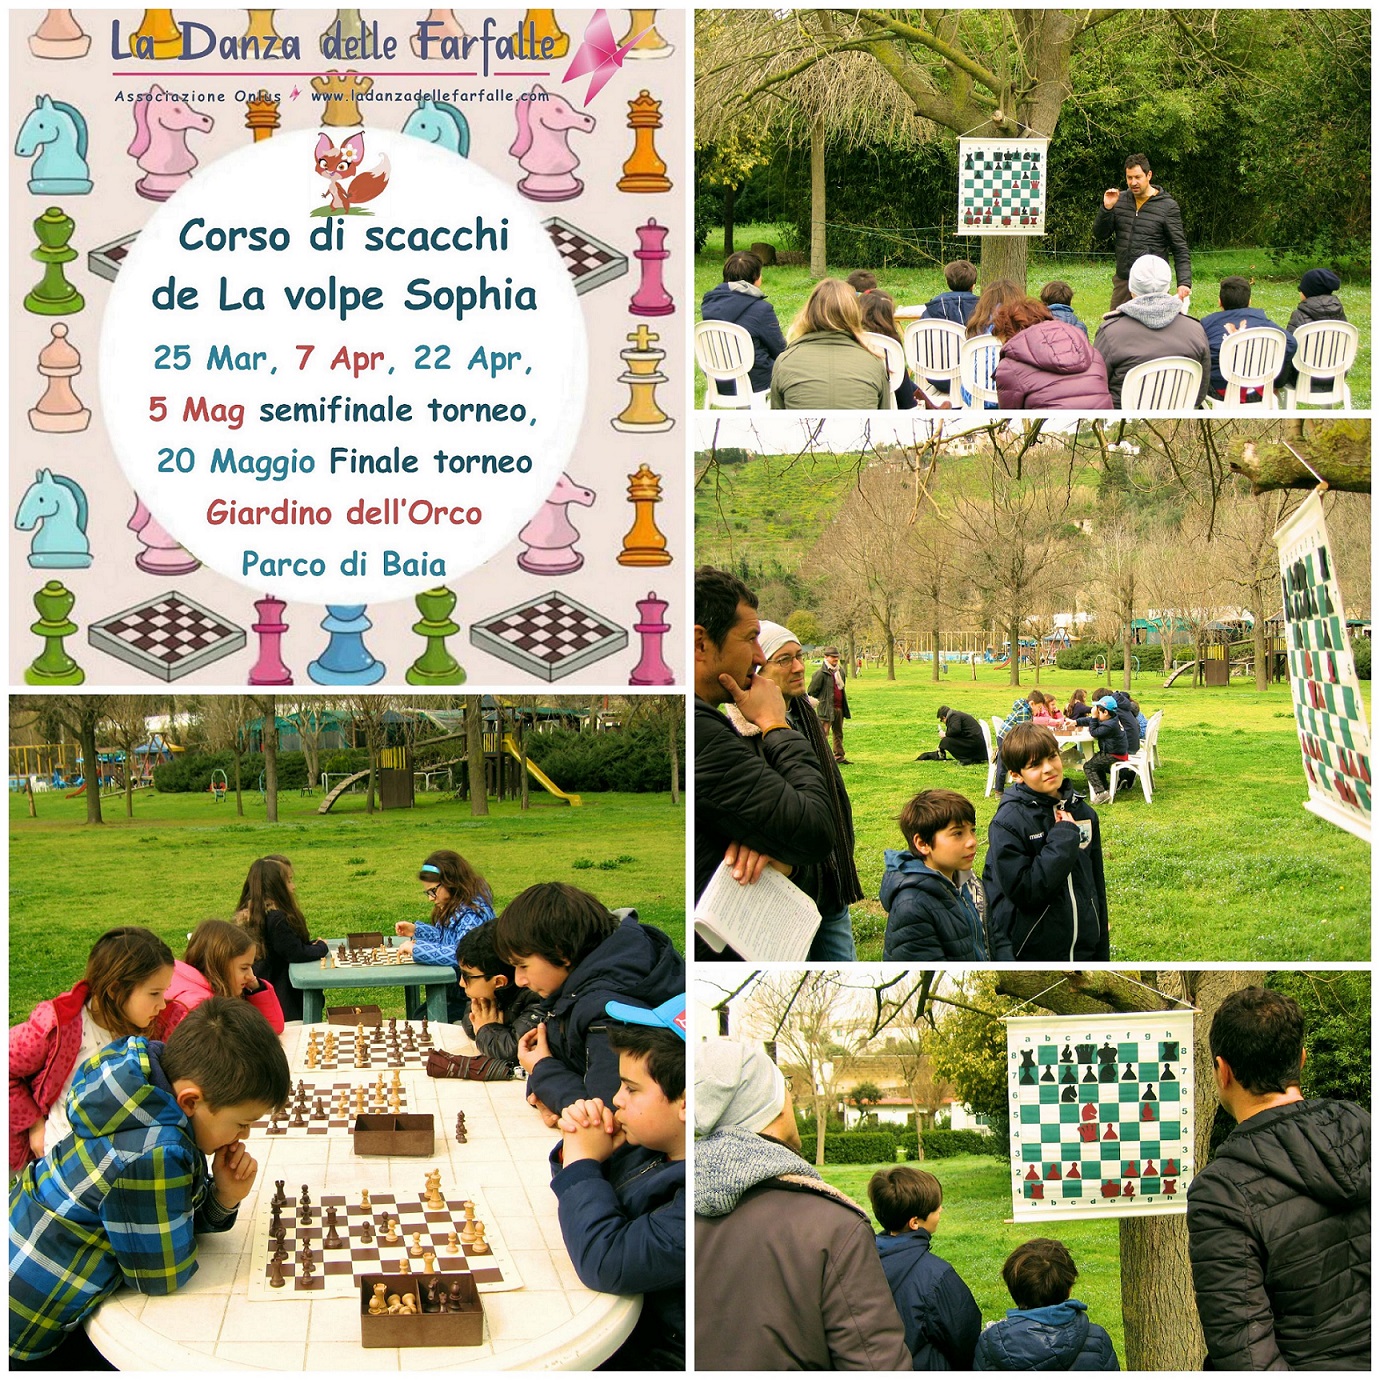 Corso di scacchi de La volpe Sophia Parco di Baia 2a